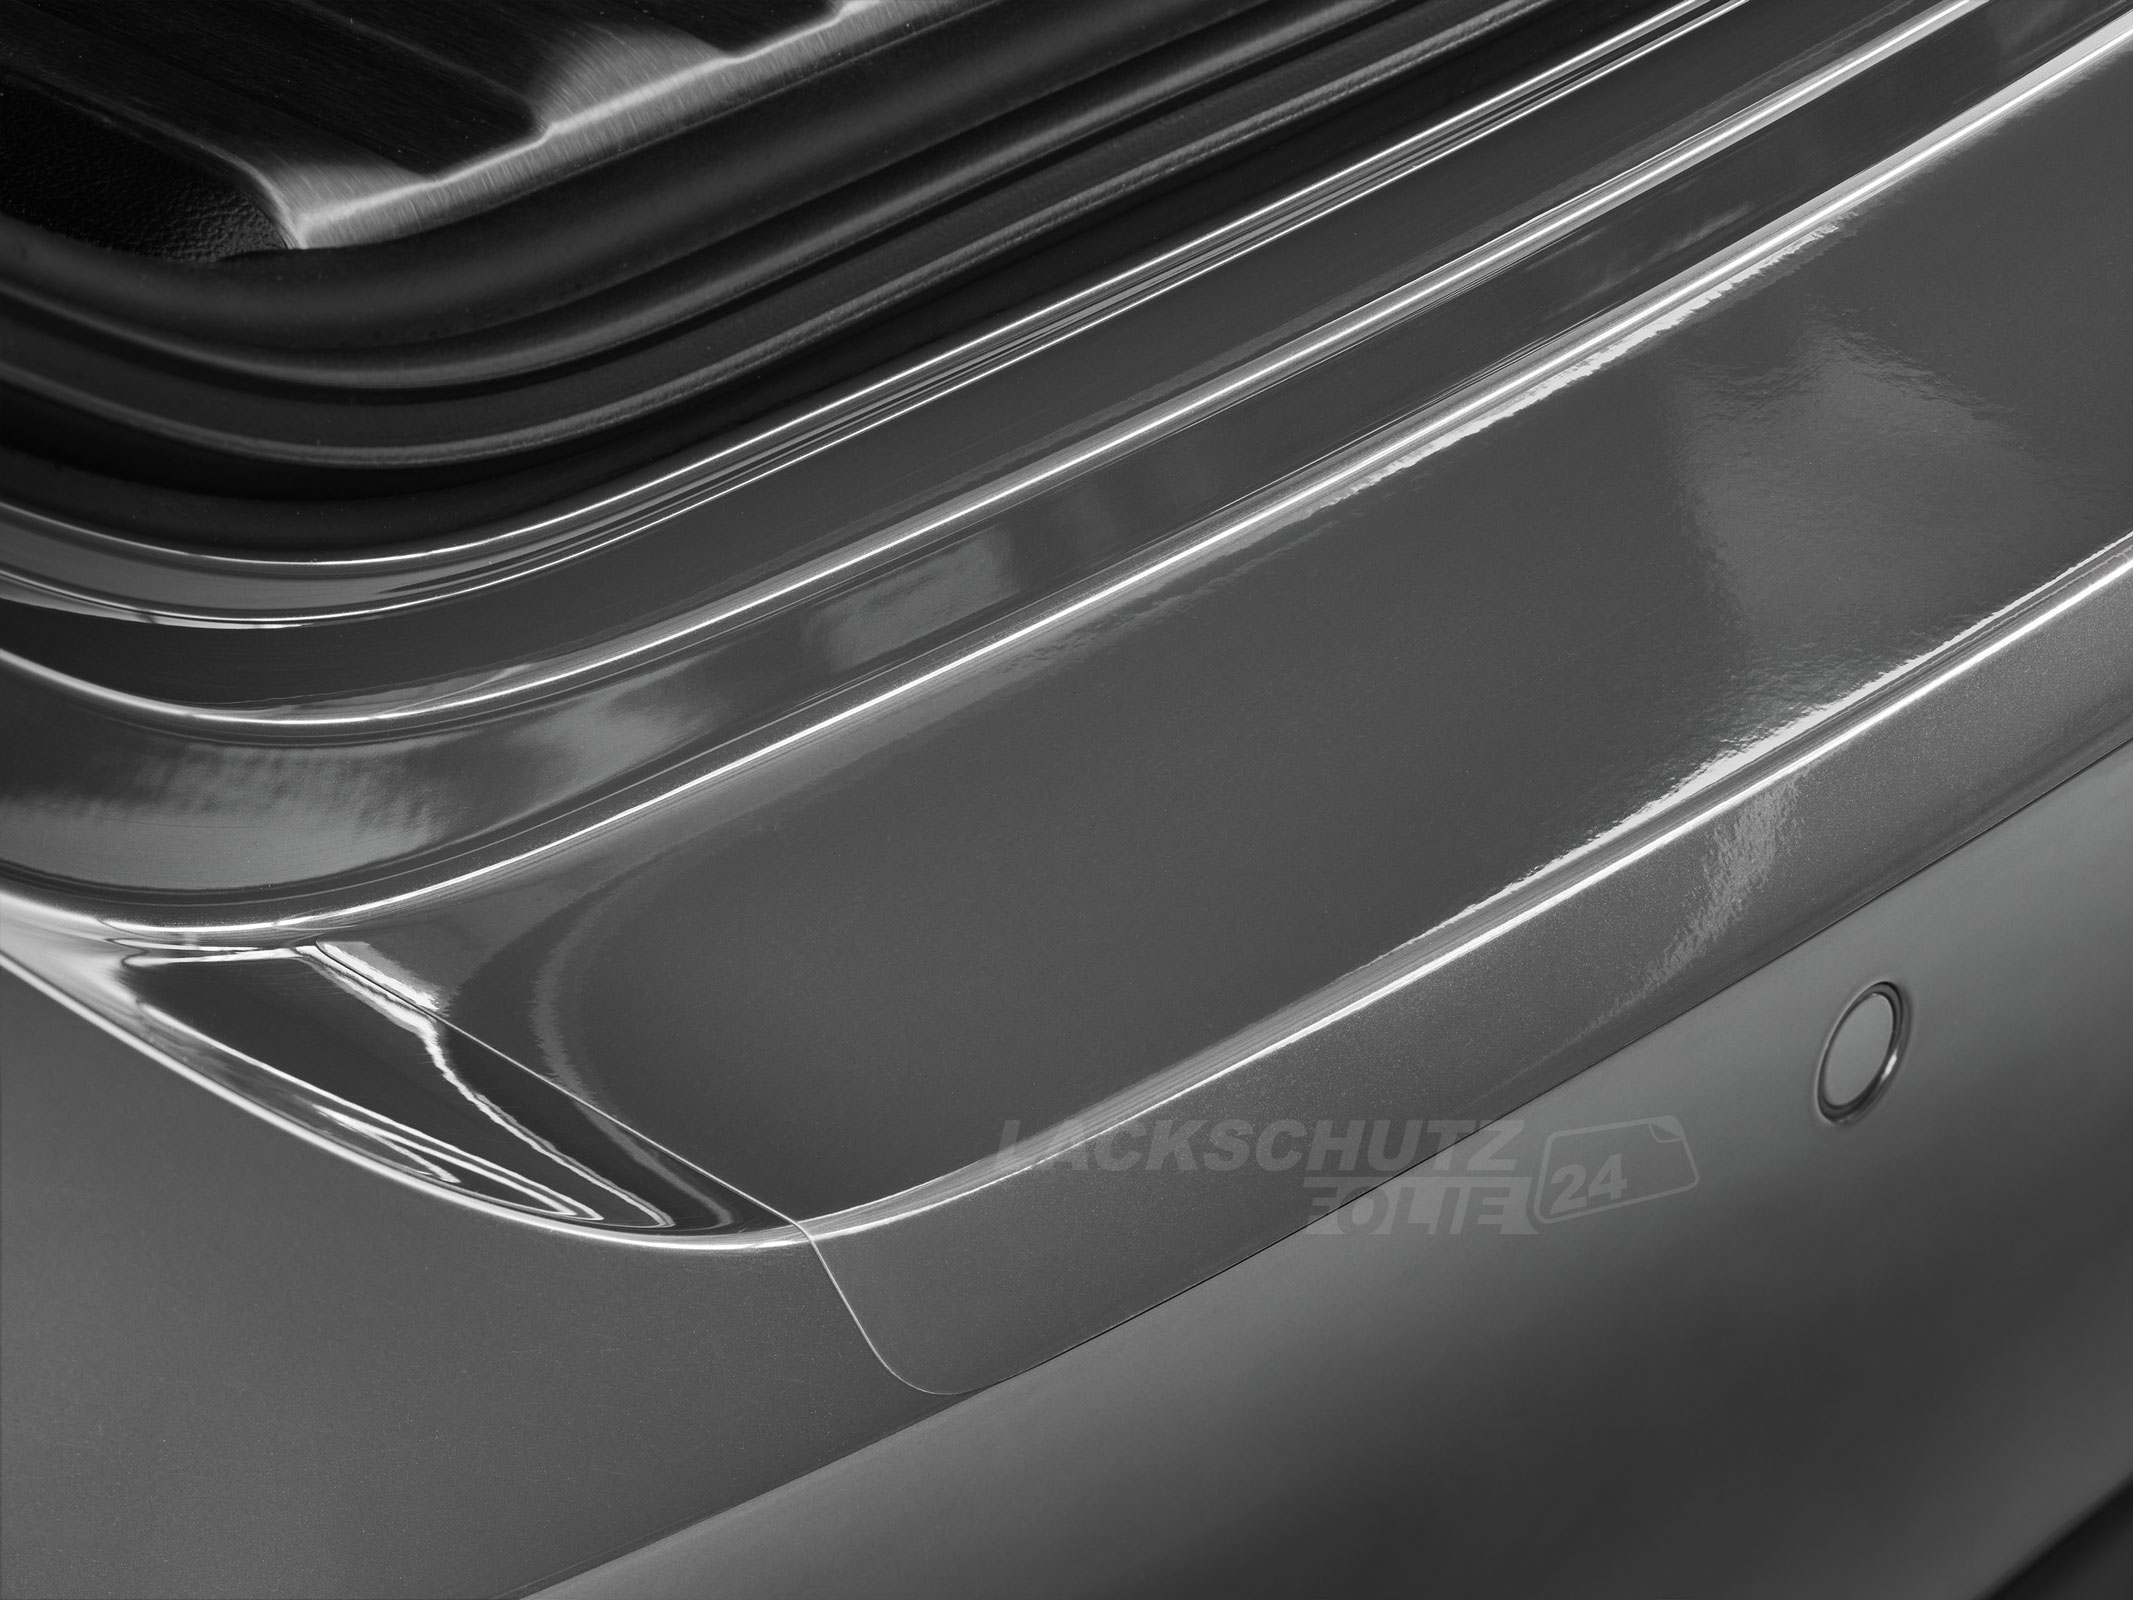 Ladekantenschutzfolie - Transparent Glatt Hochglänzend 150 µm stark für Suzuki SX4 BJ 2006-2014